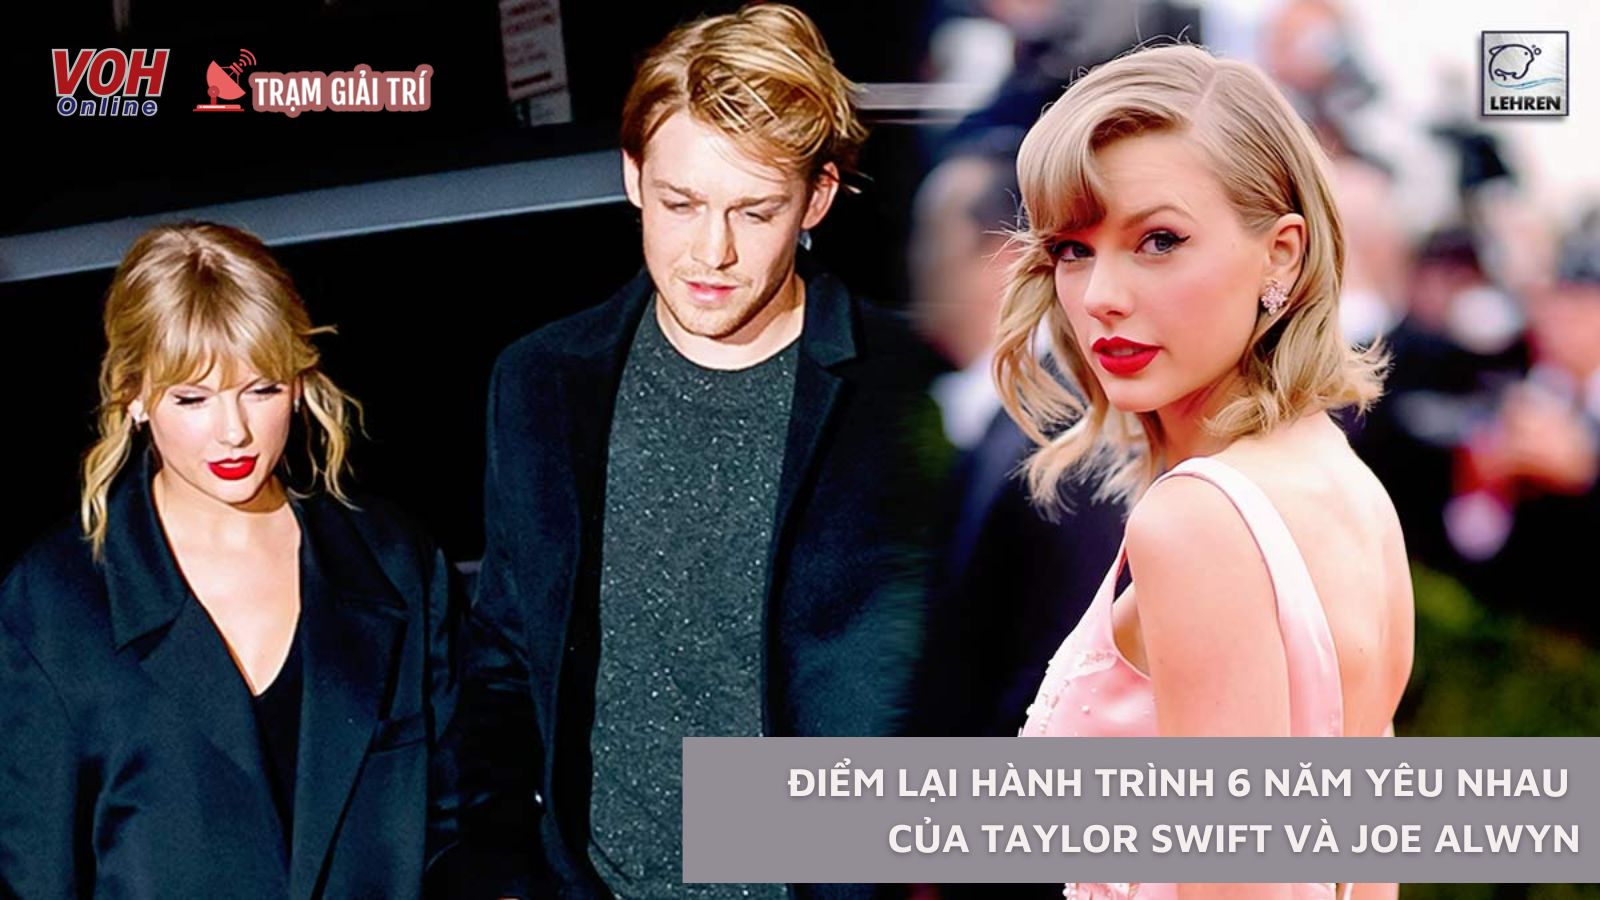 Taylor Swift Và Joe Alwyn Chia Tay: Điểm Lại Hành Trình 6 Năm Yêu Với Nhiều  Cung Bậc Cảm Xúc